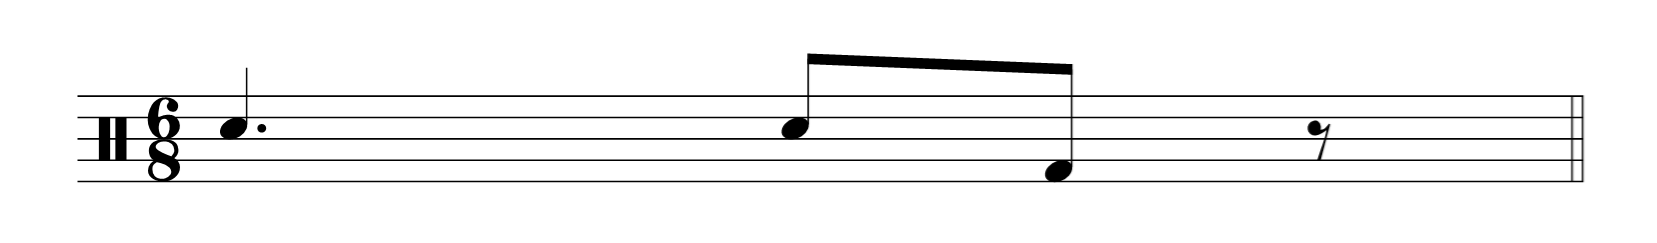 moroccan chaabi rhythm